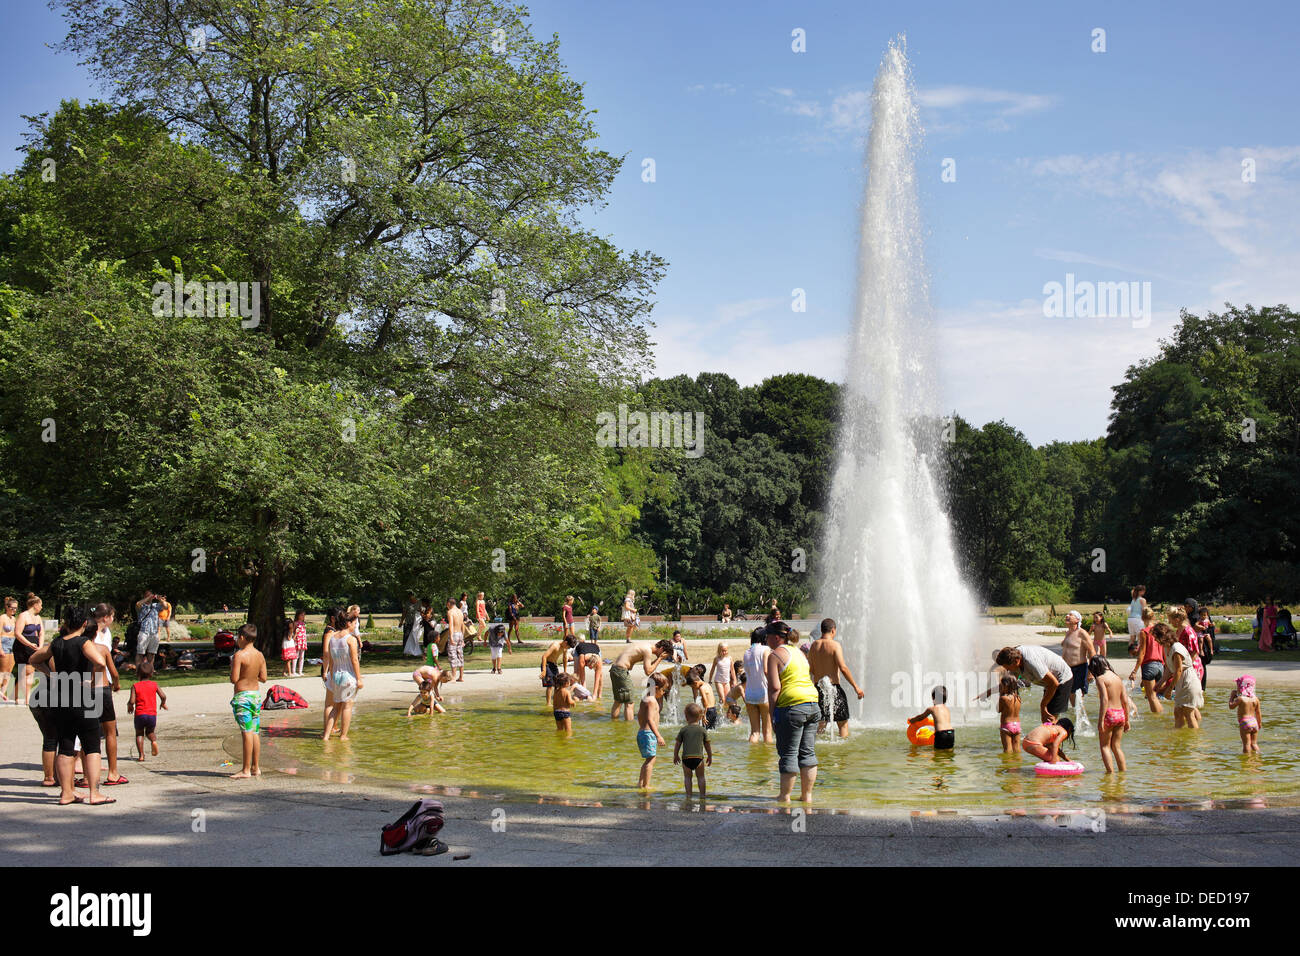 Berlin, Germany, kids splash in the Fontaene in Treptow Park Stock Photo